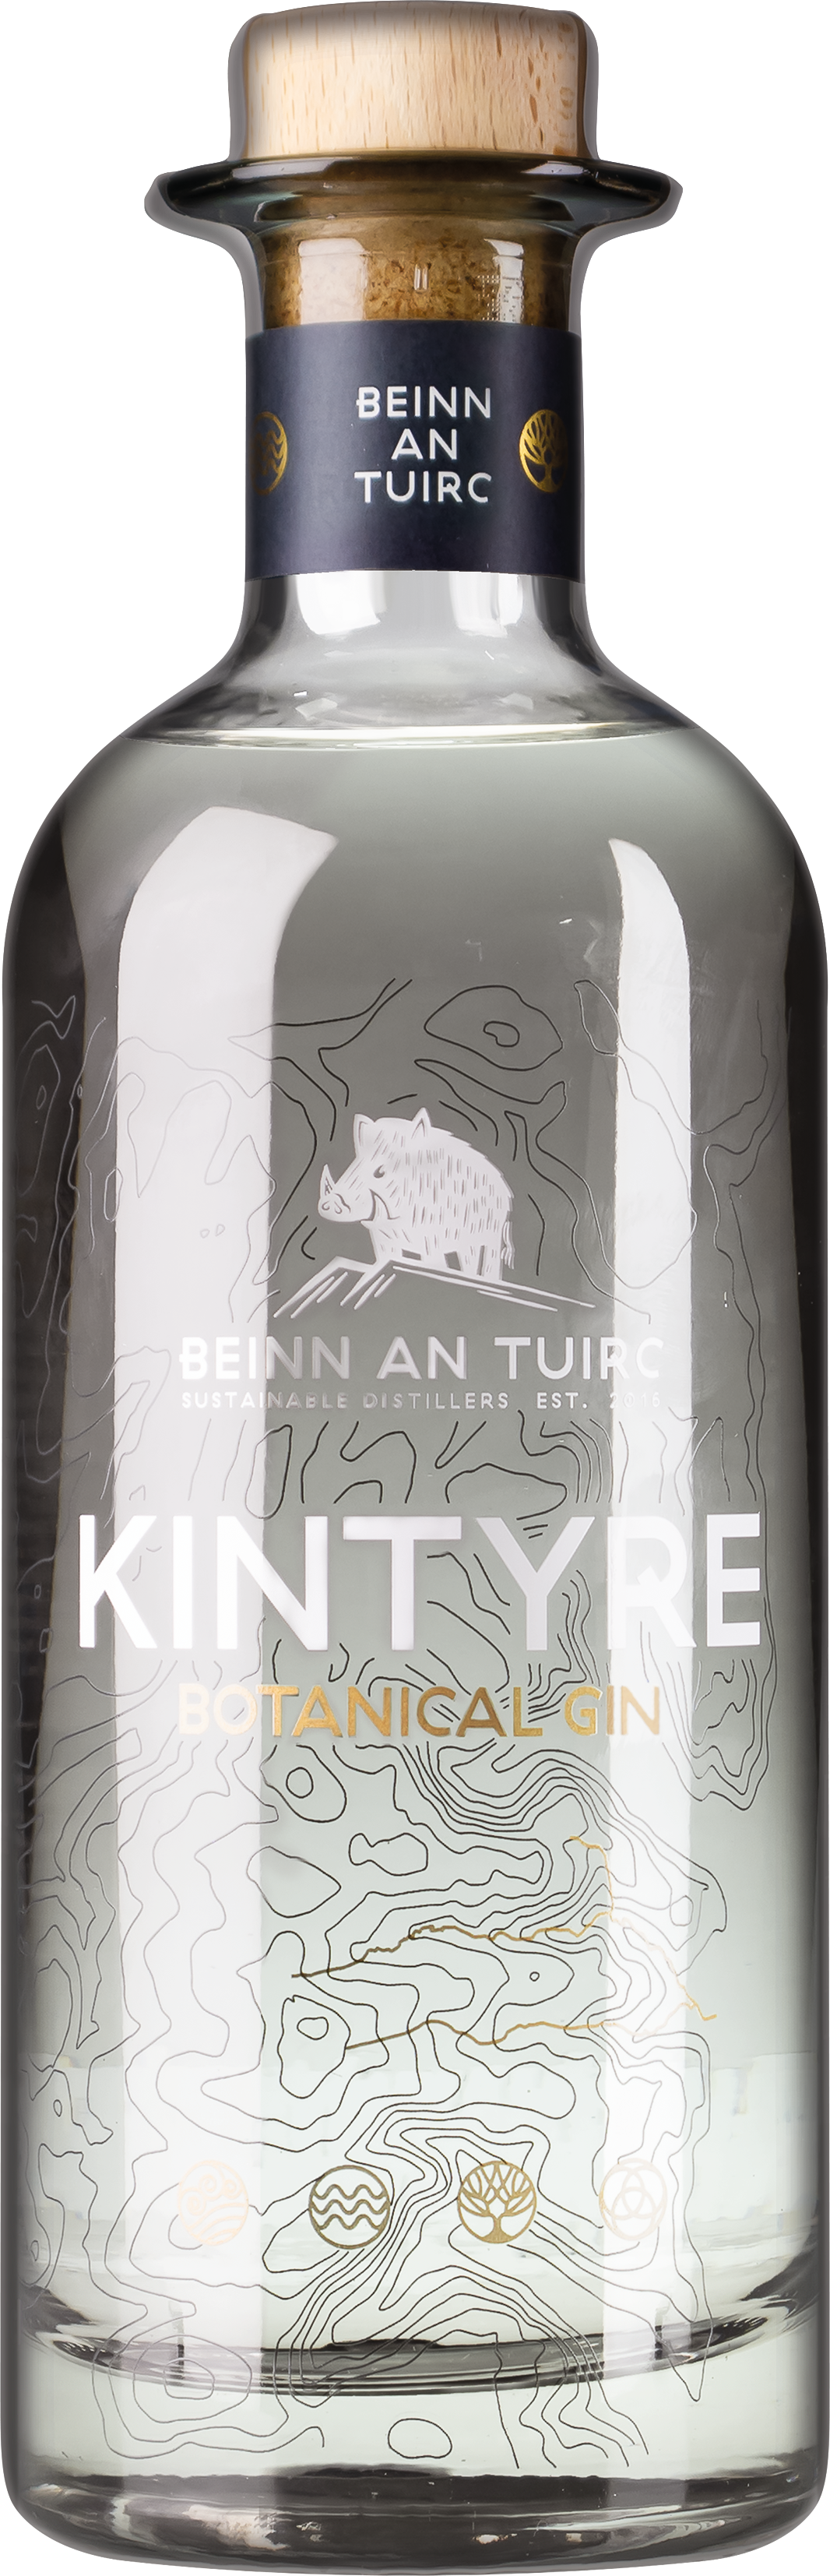 Kintyre Botanical Gin